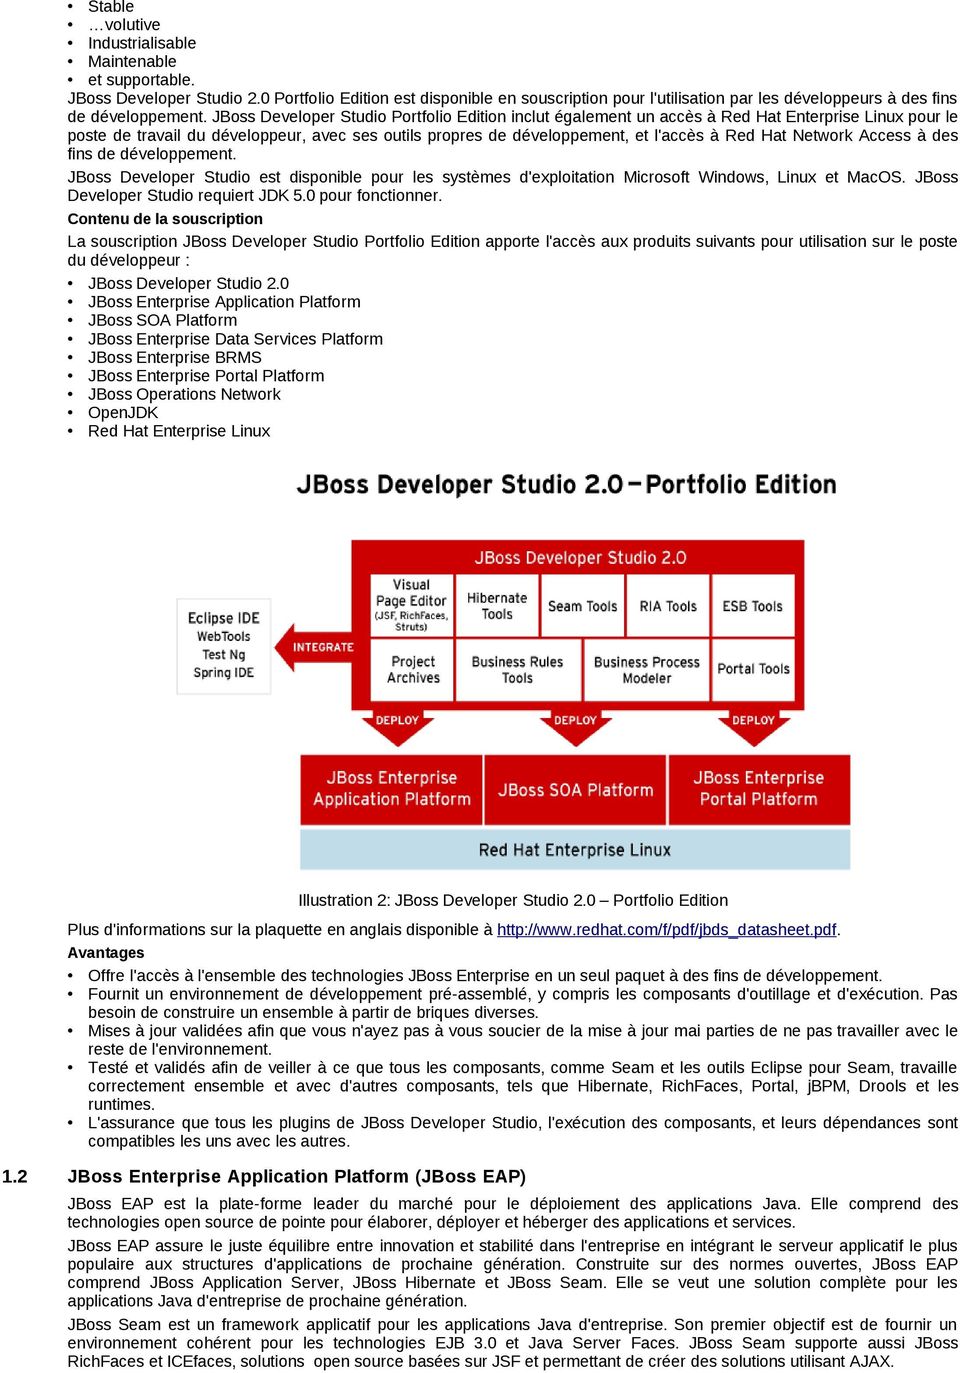 JBoss Developer Studio Portfolio Edition inclut également un accès à Red Hat Enterprise Linux pour le poste de travail du développeur, avec ses outils propres de développement, et l'accès à Red Hat